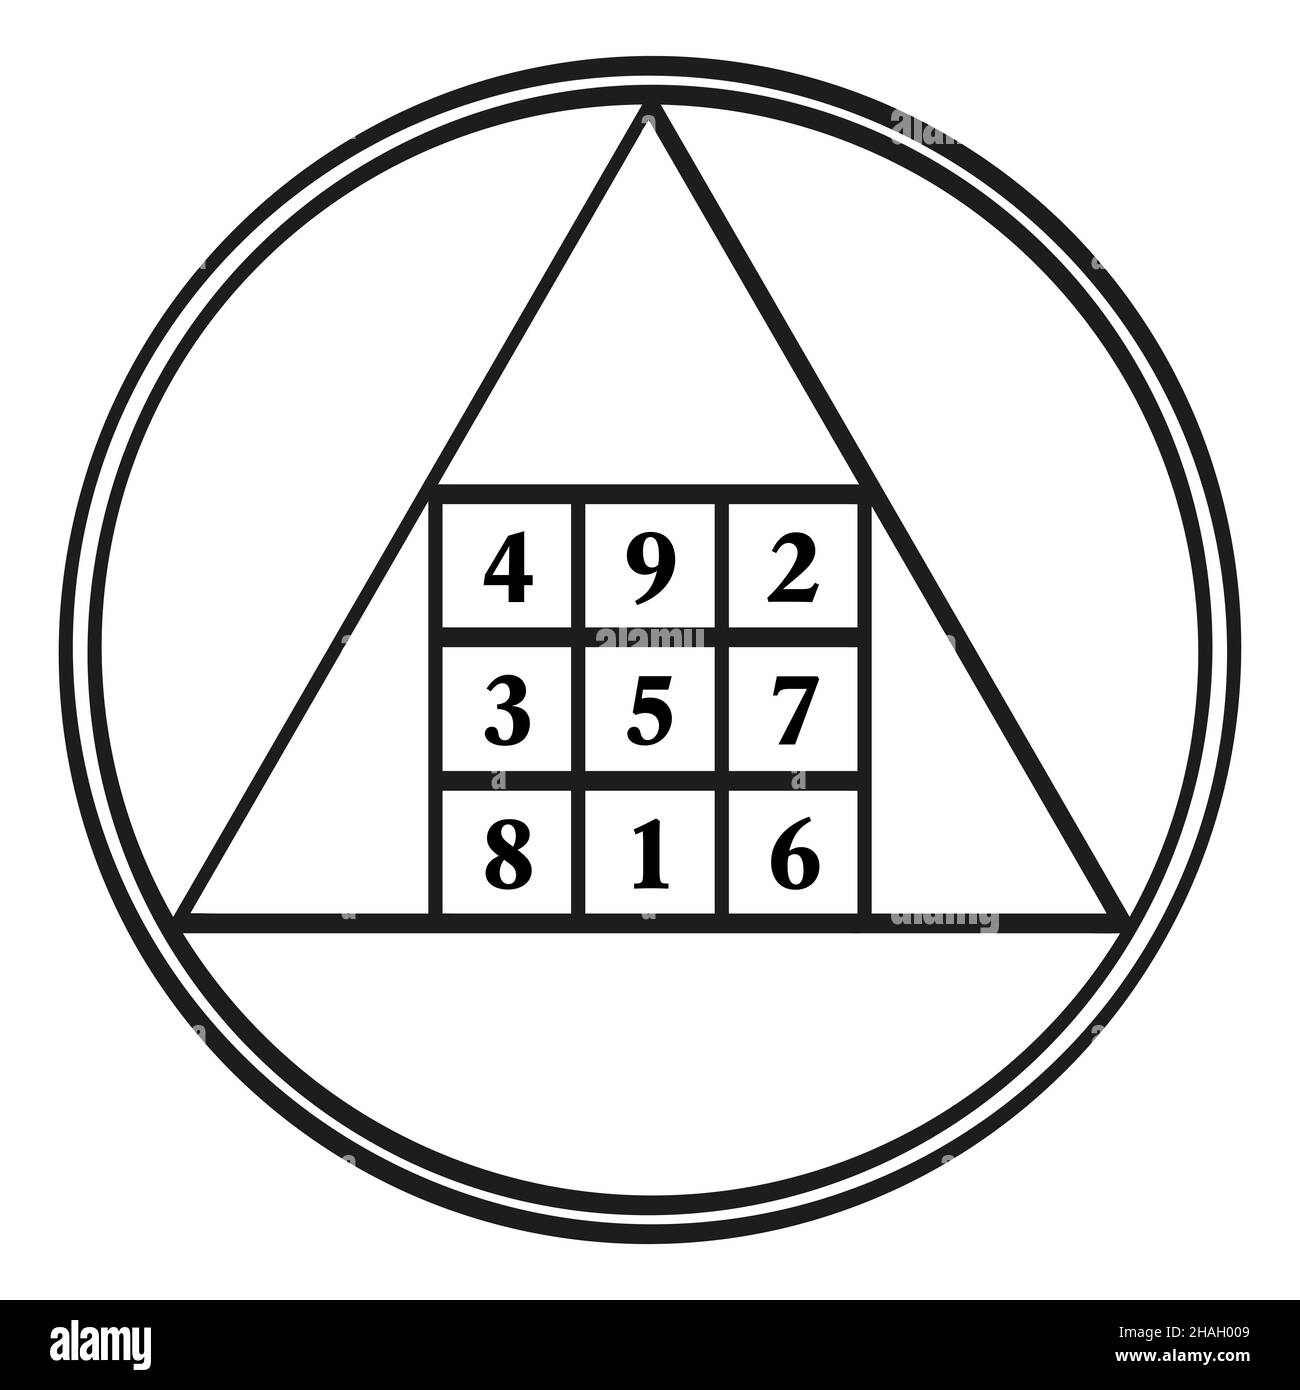 Ordine tre quadrato magico, un simbolo, assegnato al pianeta astrologico Saturno, con la costante magica 15. Quadrato magico con i numeri da 1 a 9. Foto Stock